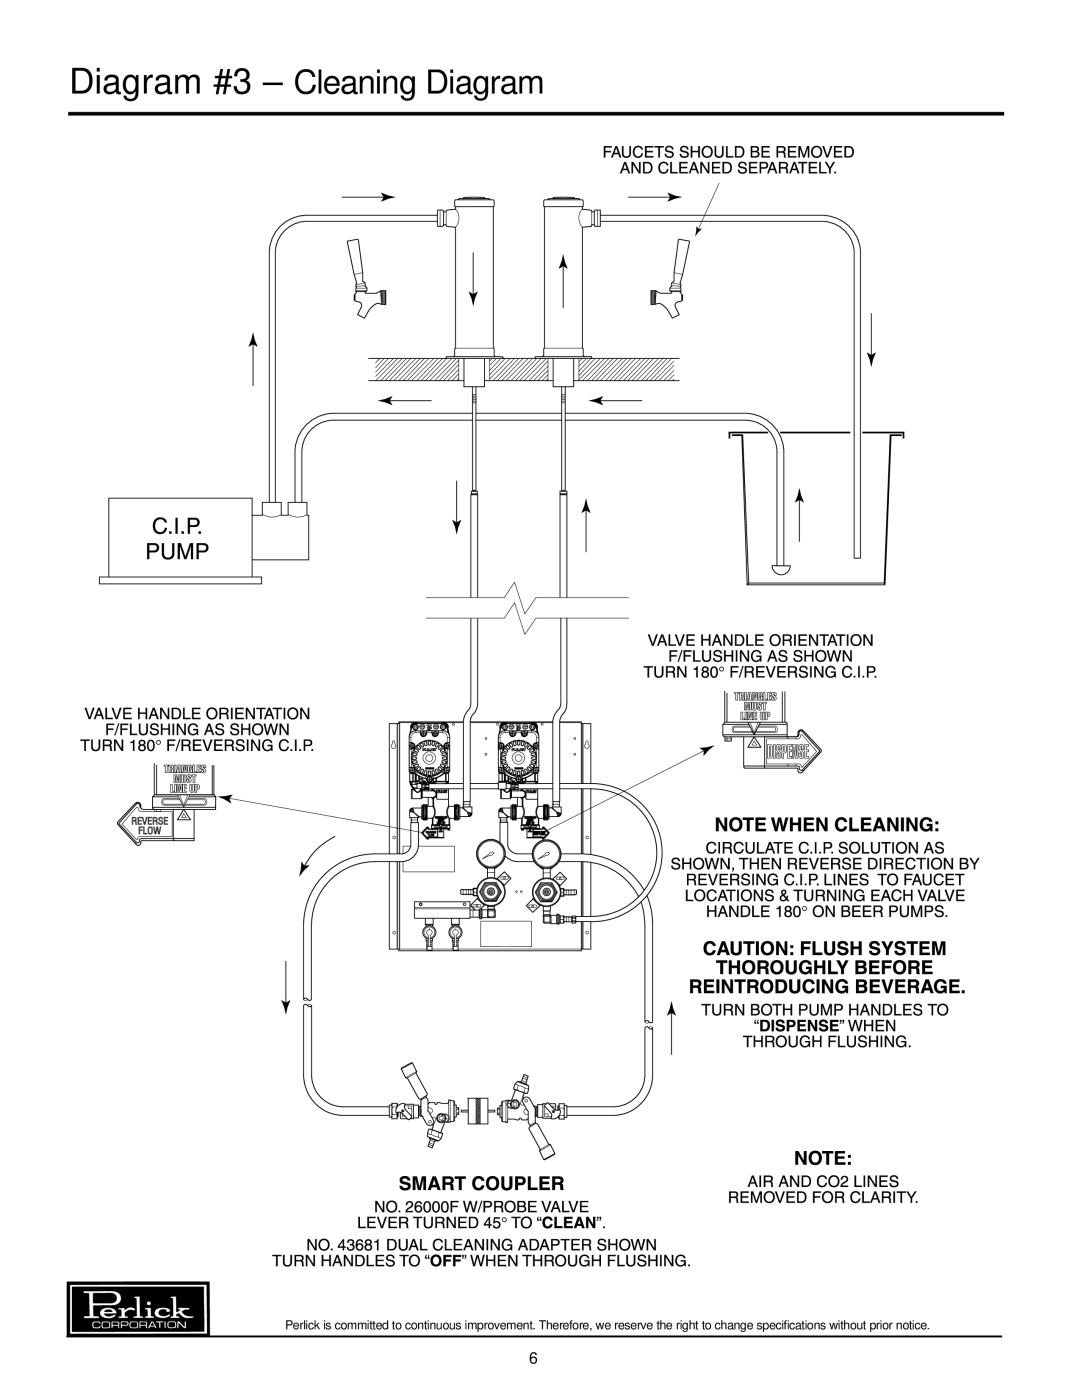 Perlick 63134-1, 63134-3, 63134-2, 63134-4 manual Diagram #3 - Cleaning Diagram 